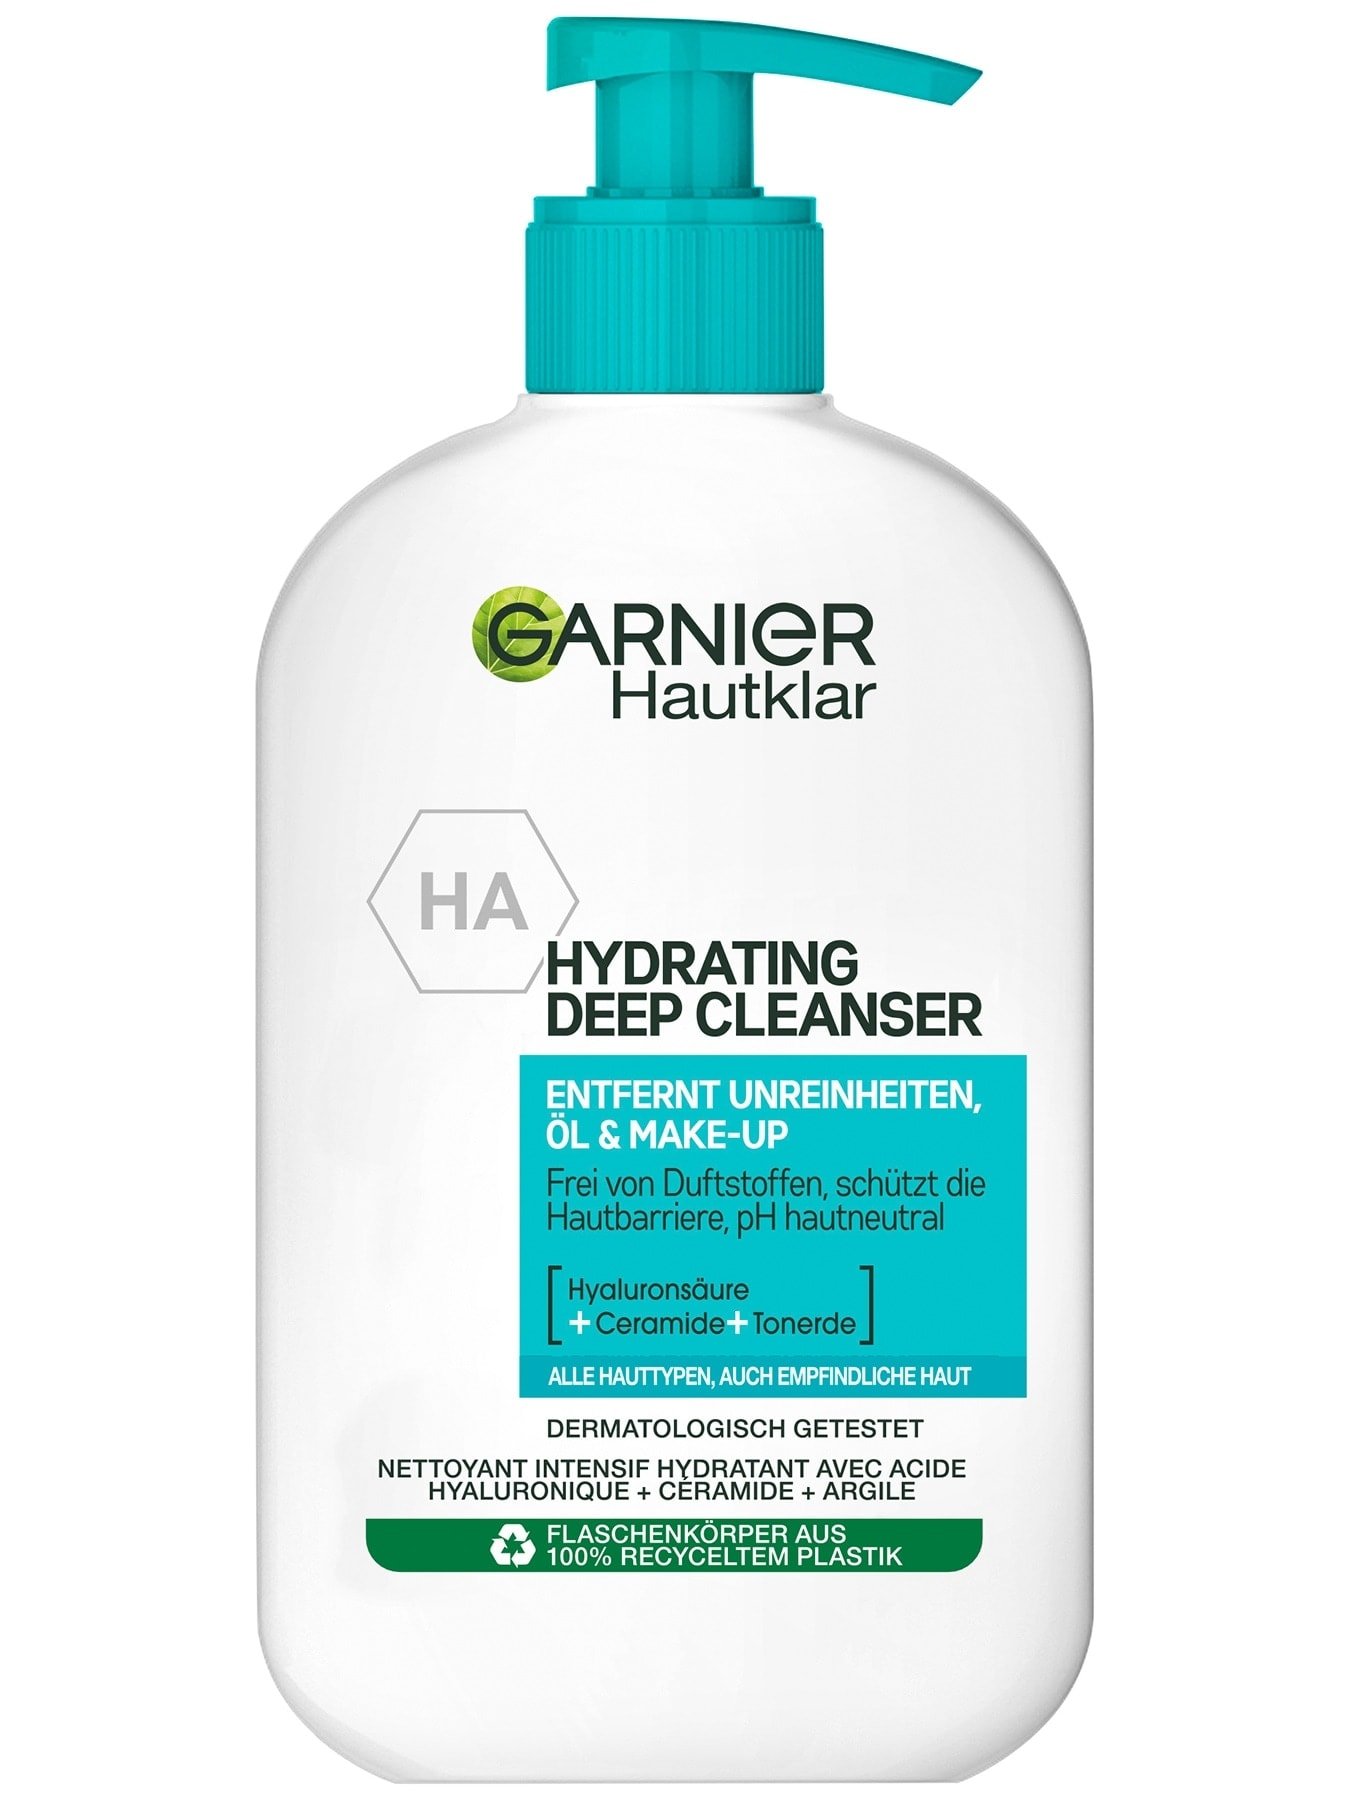 Garnier Hautklar Hydrating Deep Cleanser Produktabbildung